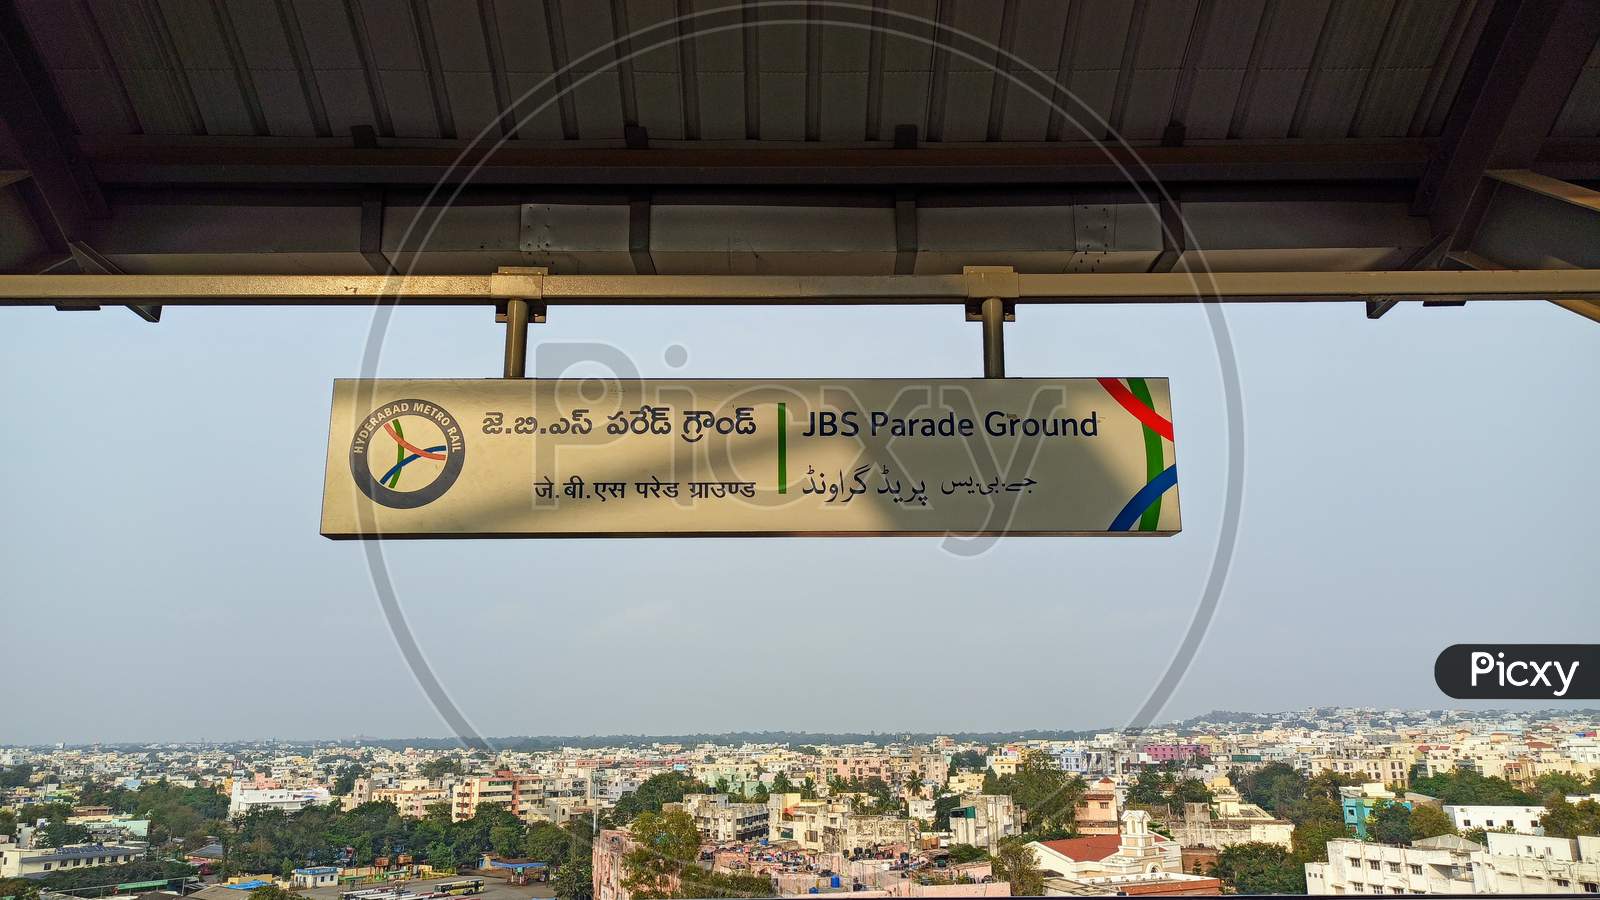 JBS Parade Ground Metro Rail Station